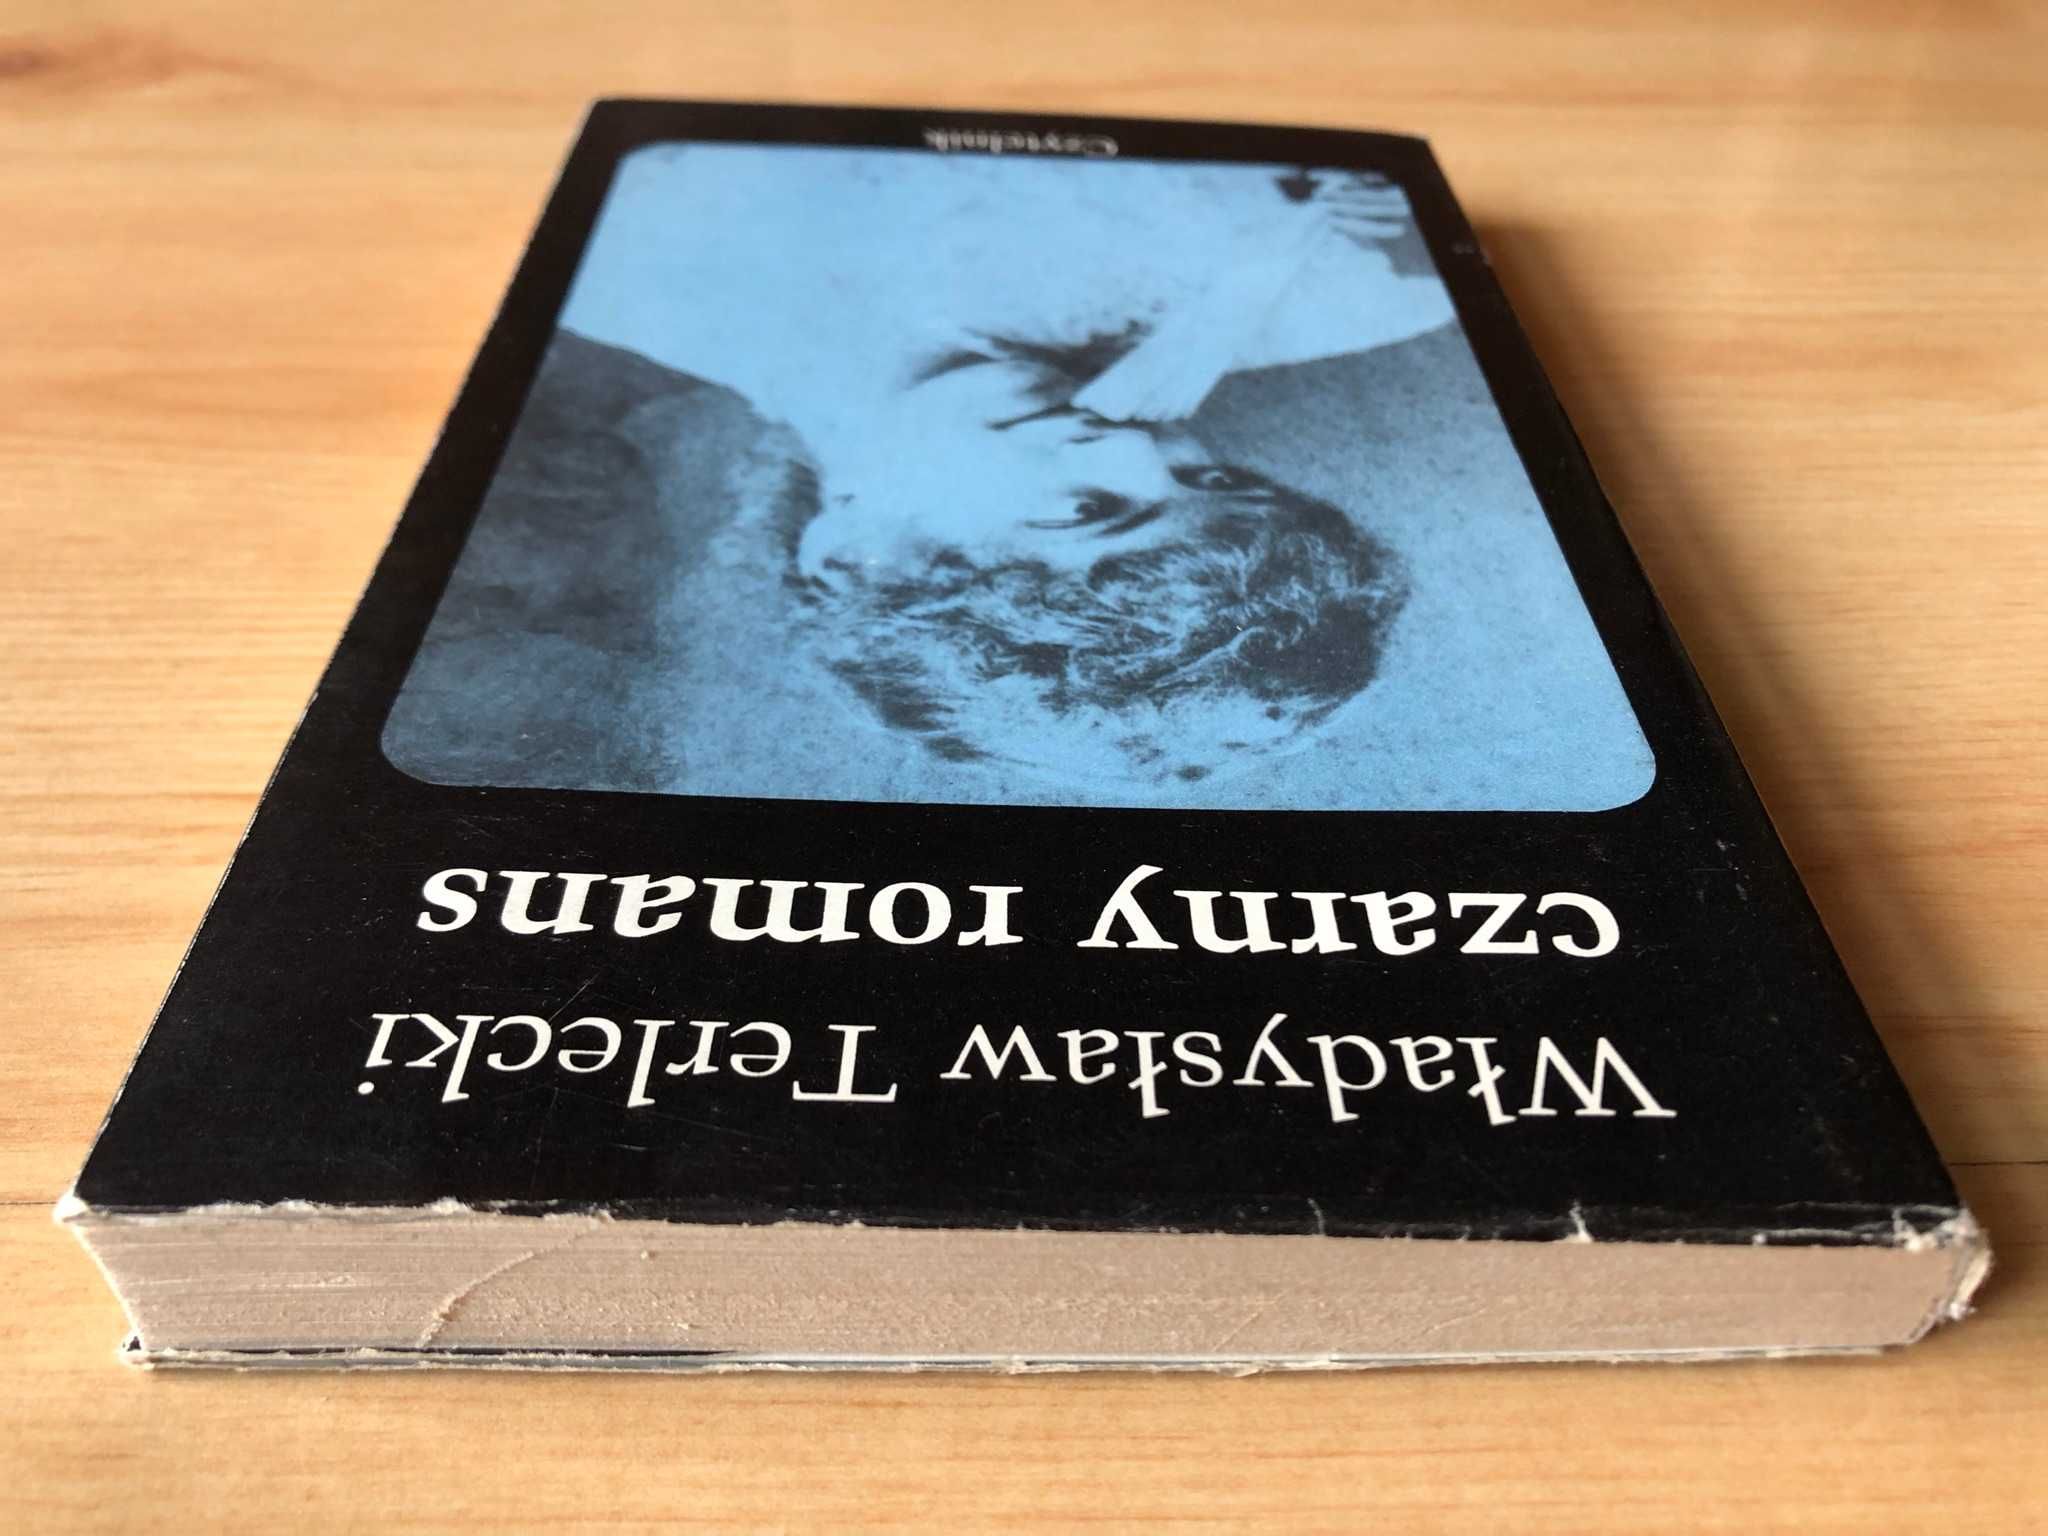 Czarny romans (1976) - Władysław Terlecki